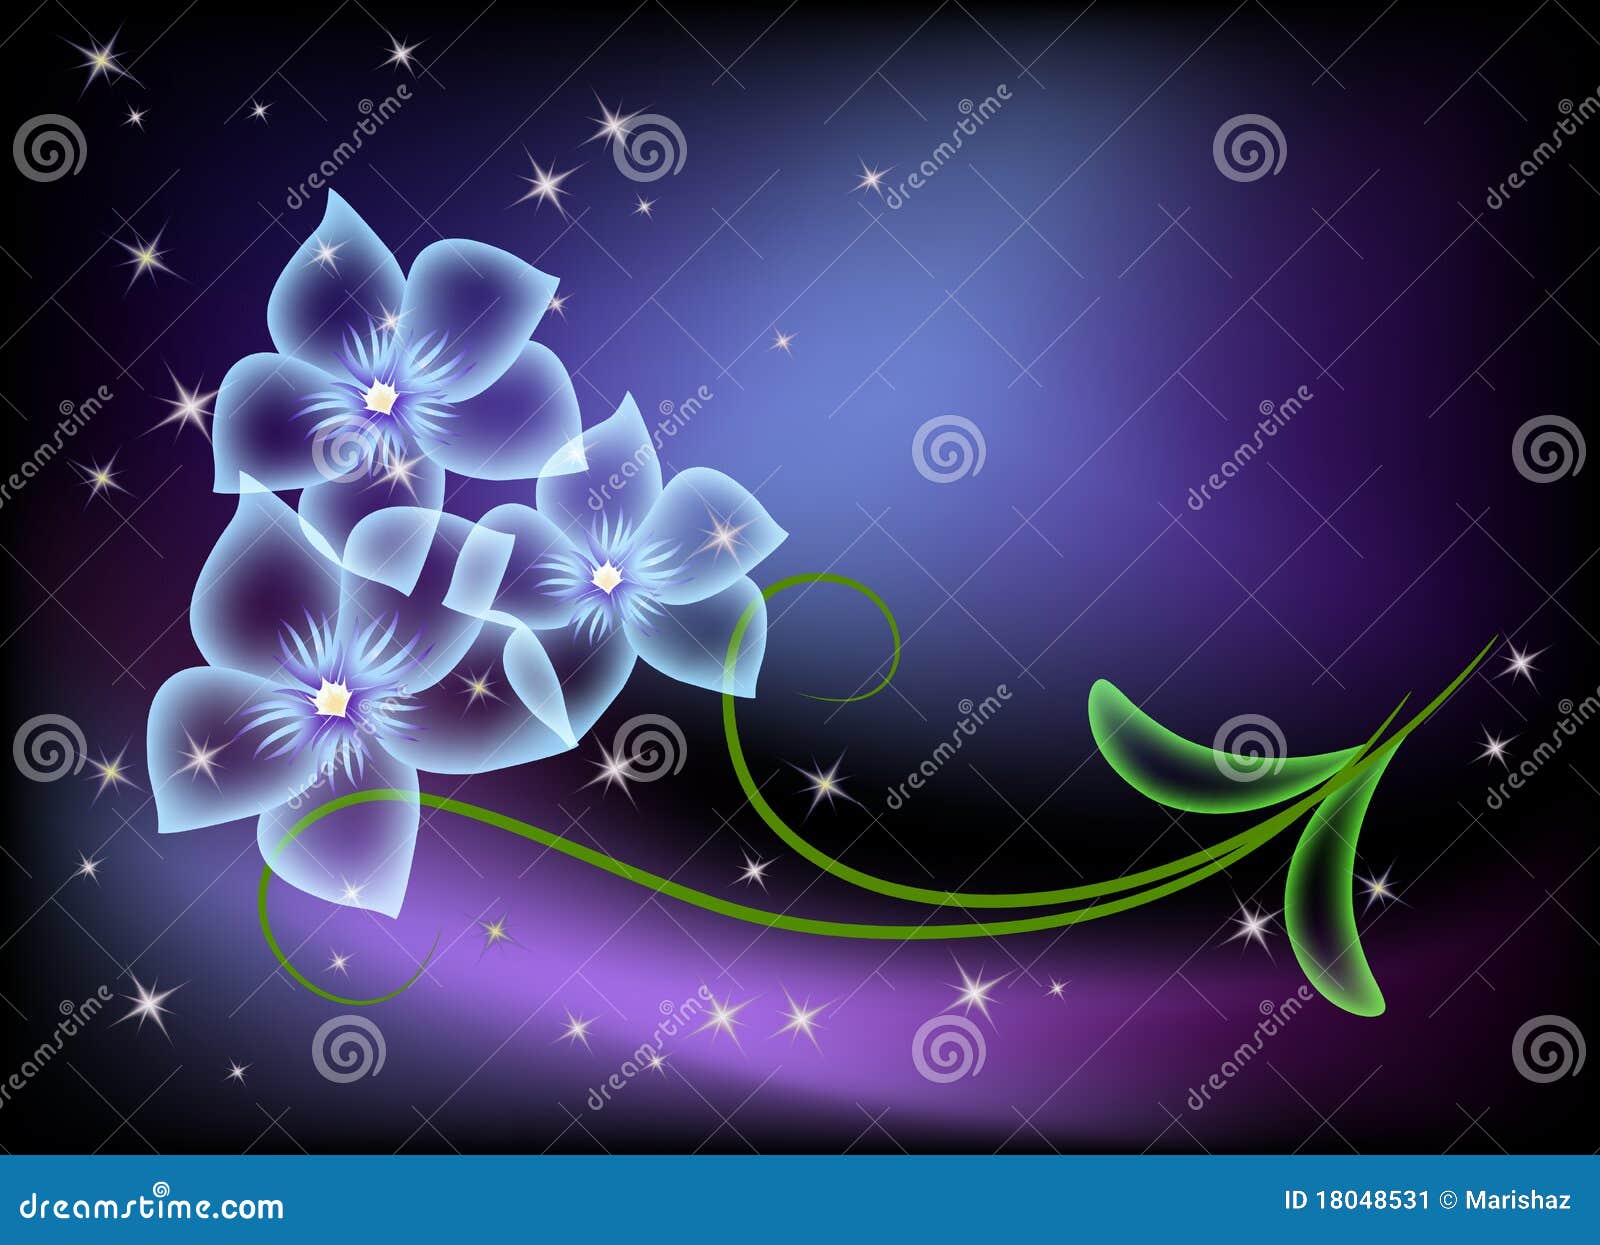 透明花的星形向量例证 插画包括有幻想 行动 说明 形状 抽象 附庸风雅 动态 设计